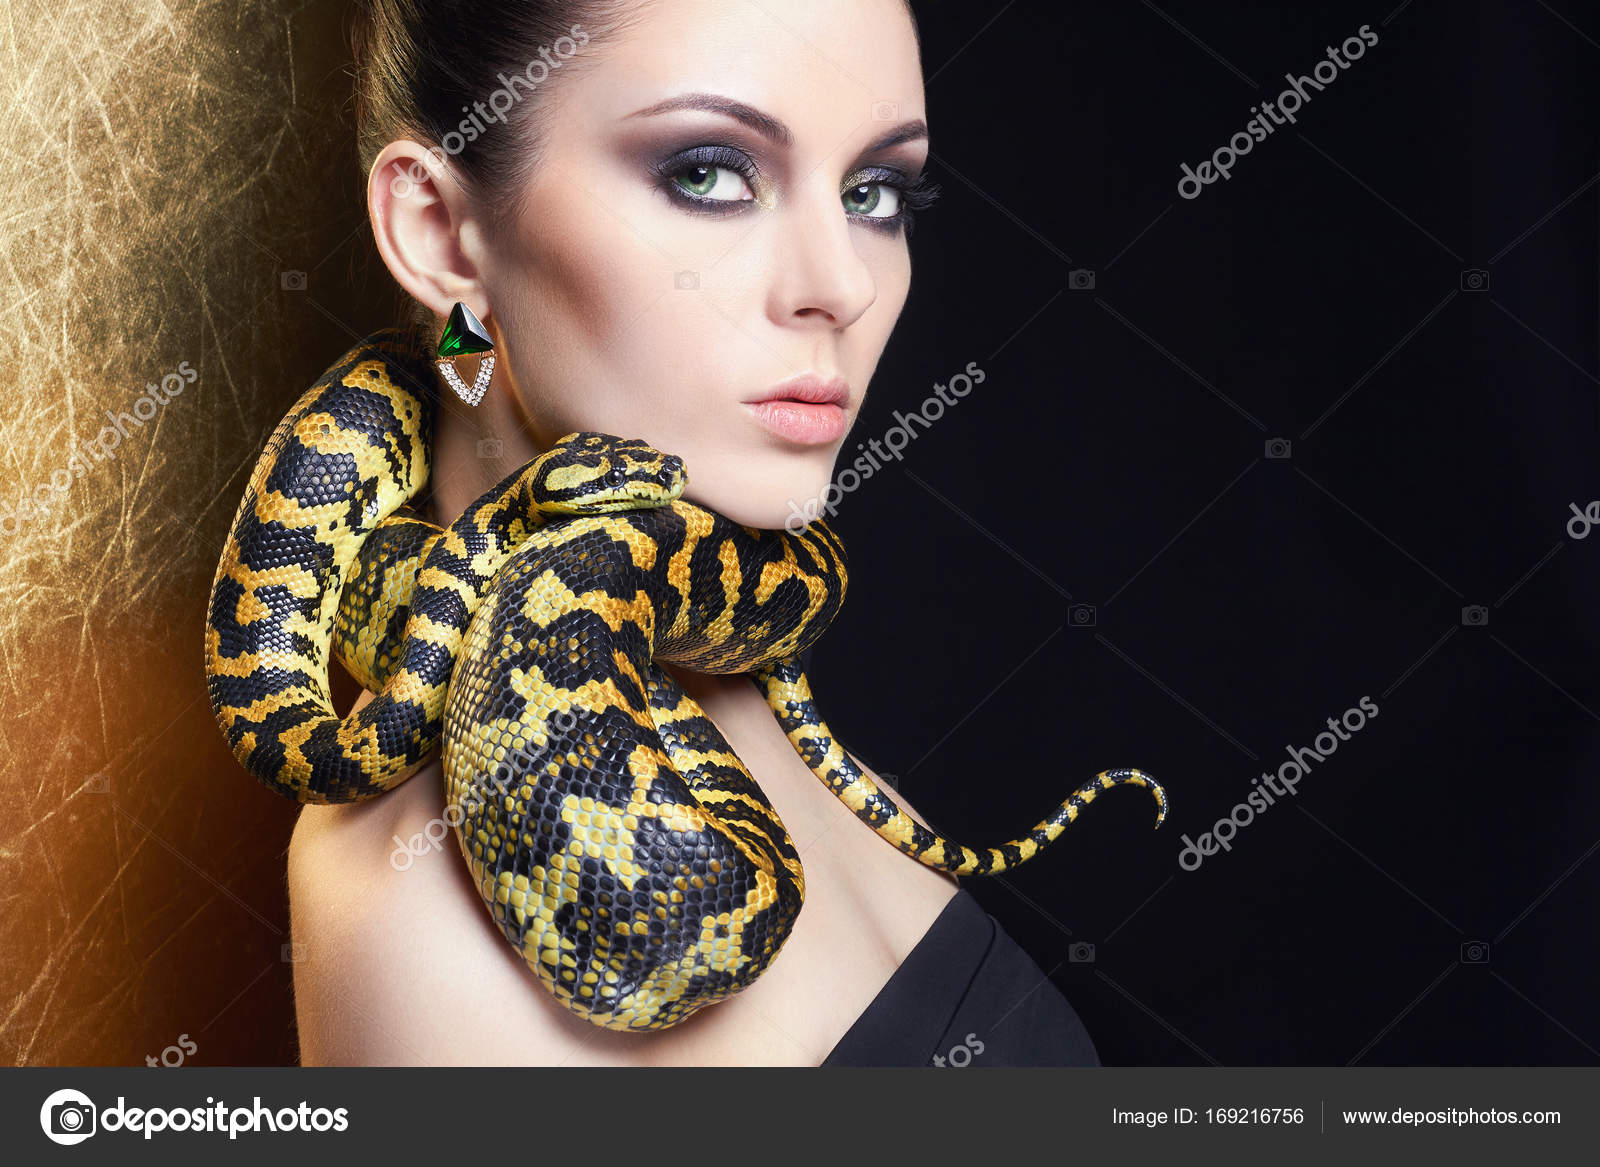 hot girls w snakes